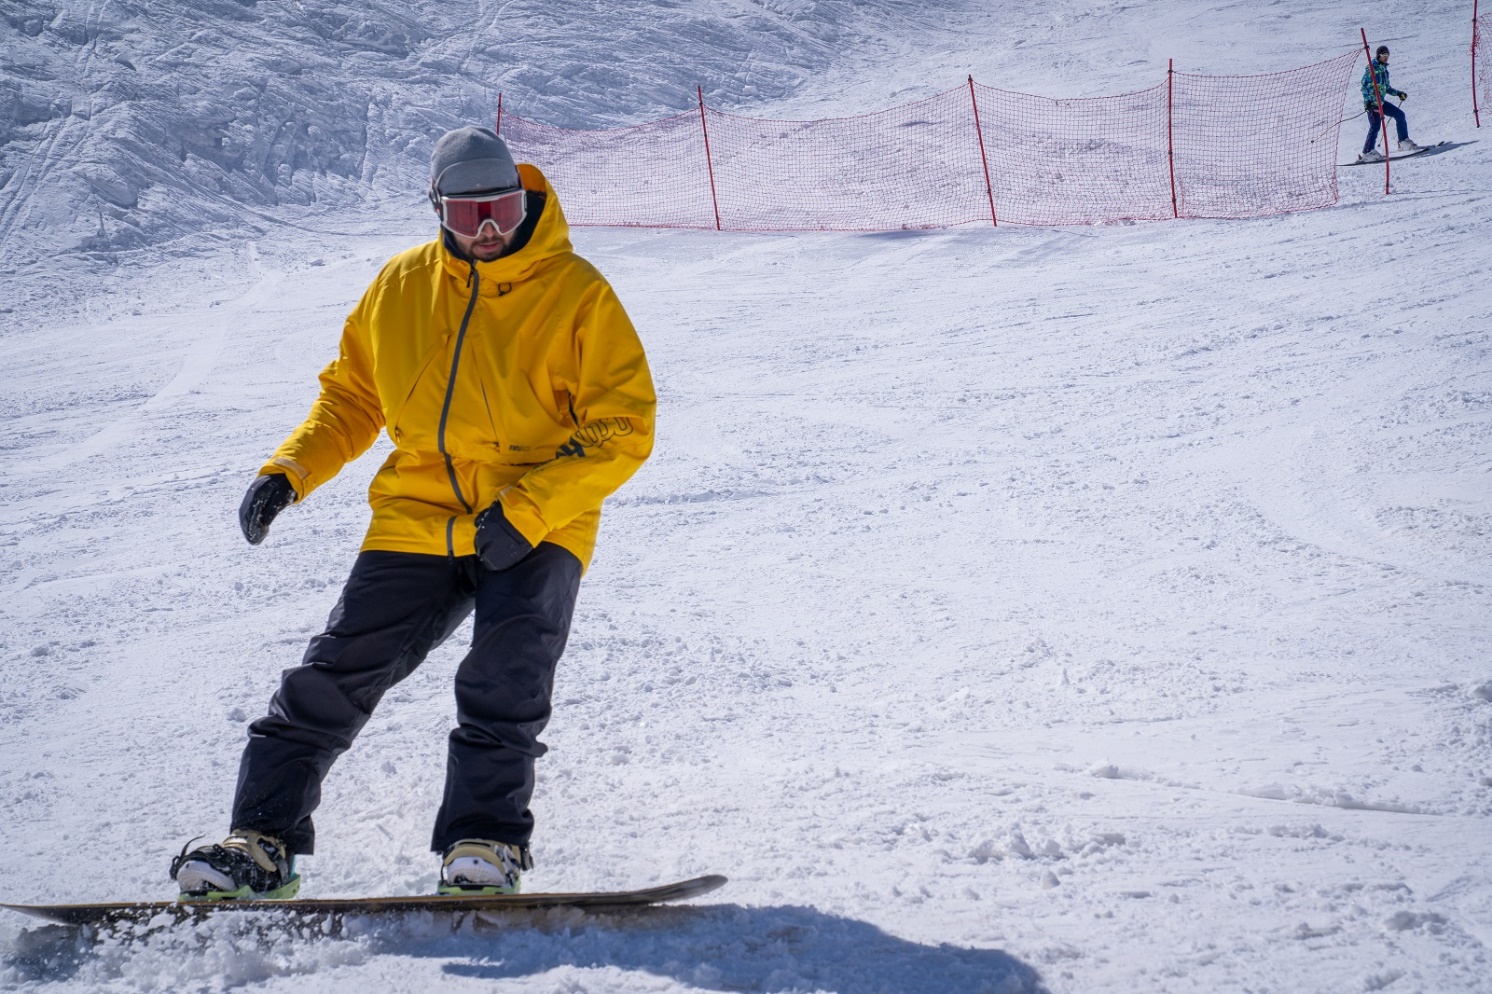  قهرمانی در قلب کوهستان در مسابقات جایزه بزرگ اسکی اسنوبرد MVM